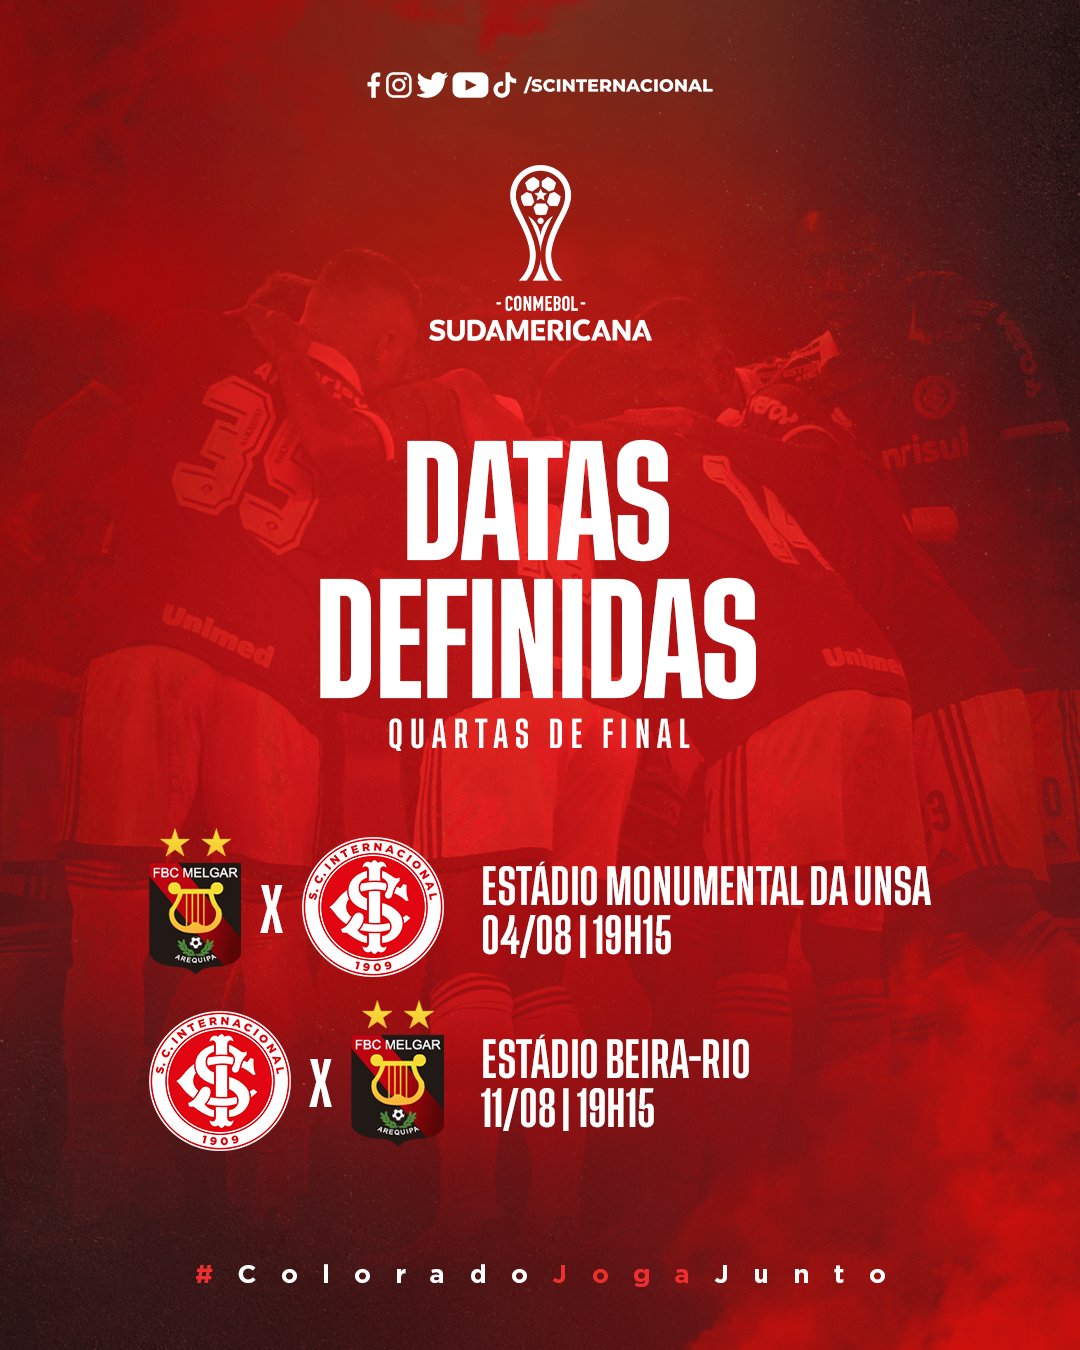 CONMEBOL Libertadores on X: 📌🏆 Tabela definida! Os 1⃣6⃣ jogos